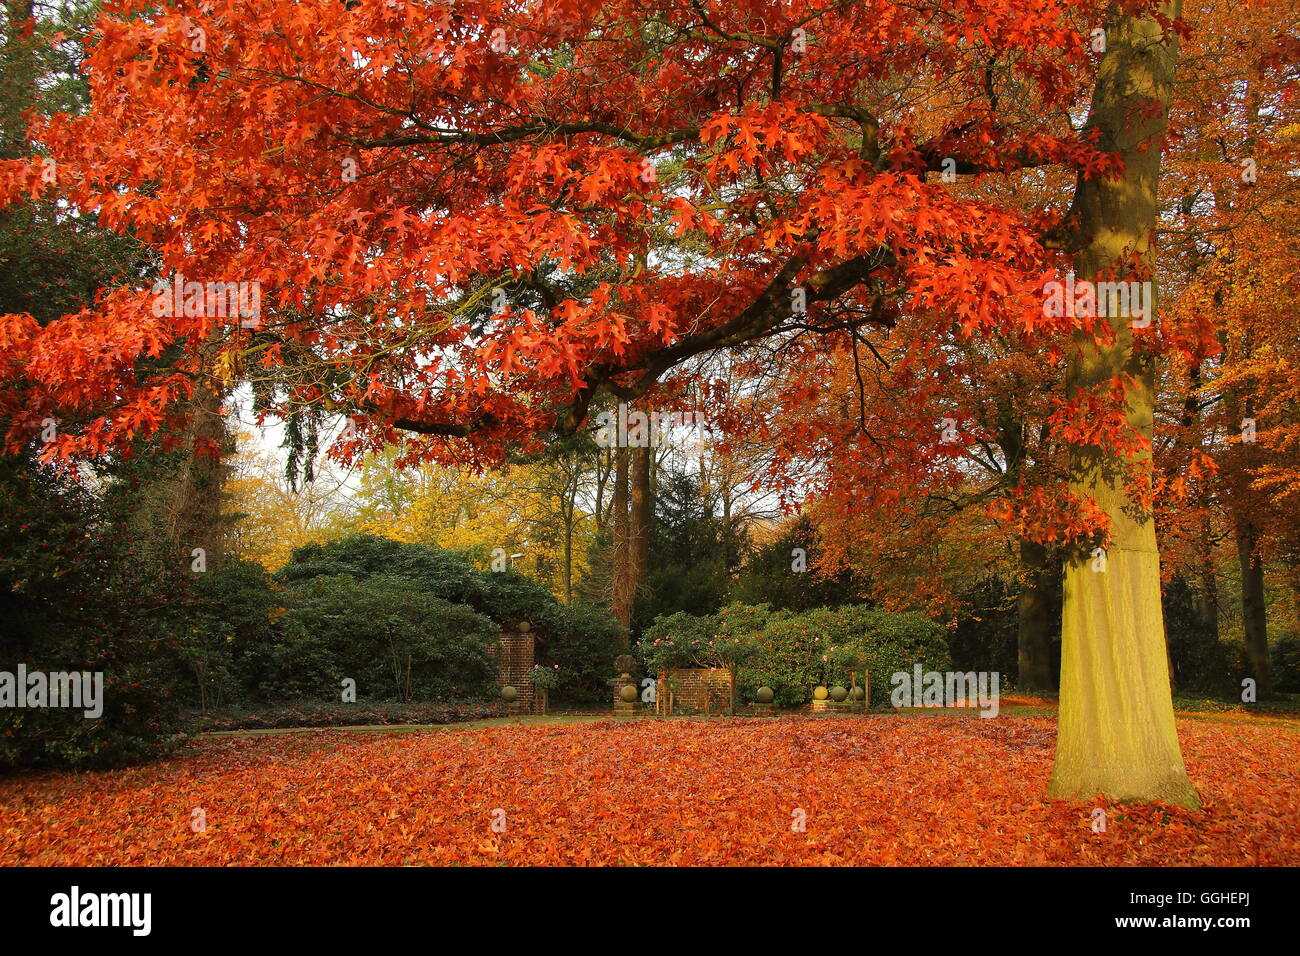 Le Chêne écarlate (Quercus coccinea), feuilles rouges en automne Banque D'Images